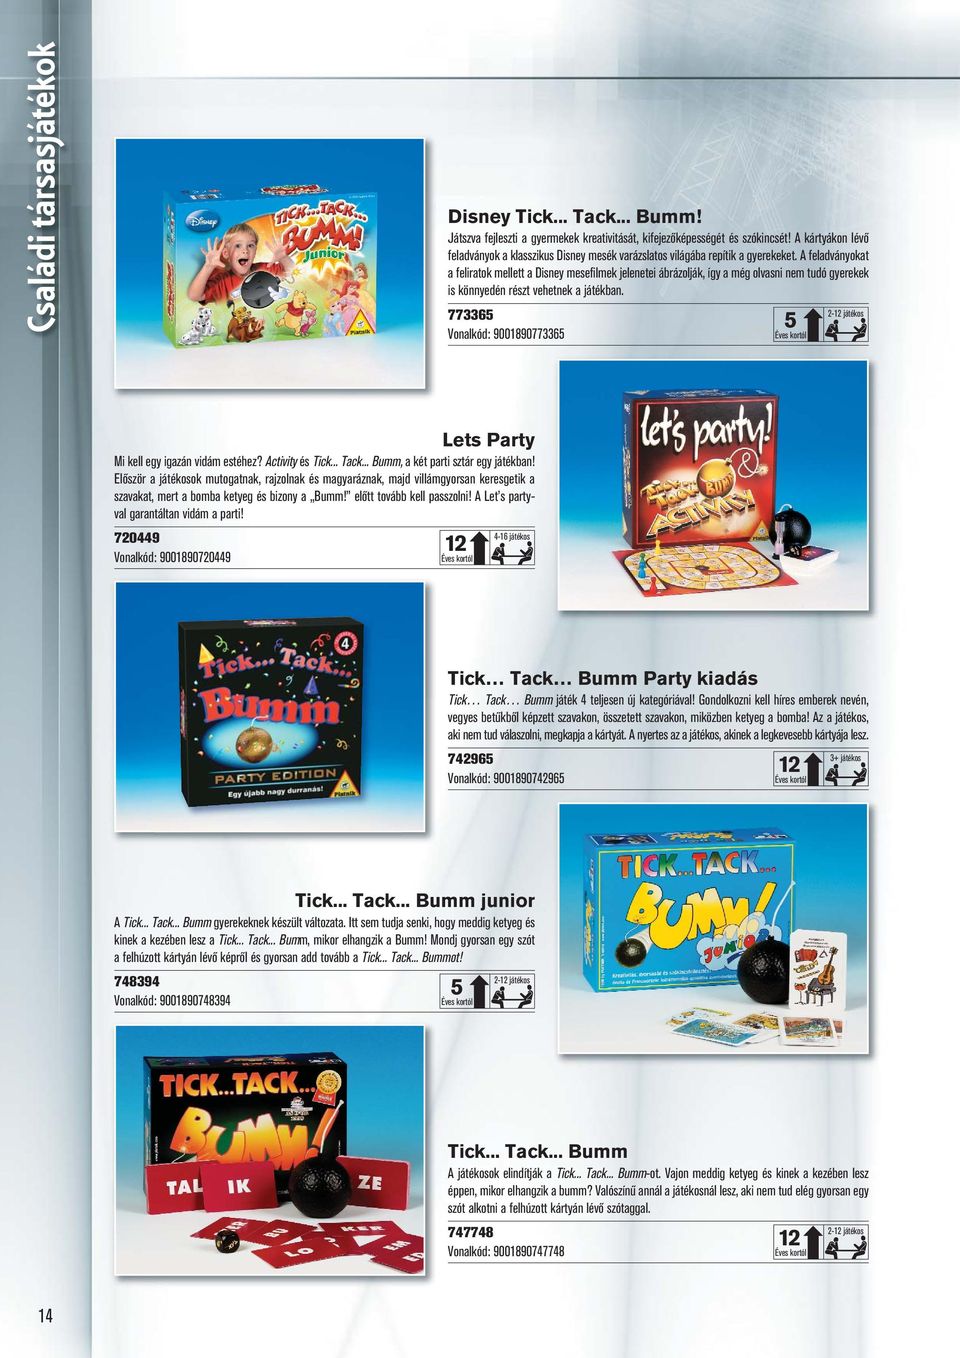 A feladványokat a feliratok mellett a Disney mesefilmek jelenetei ábrázolják, így a még olvasni nem tudó gyerekek is könnyedén részt vehetnek a játékban.